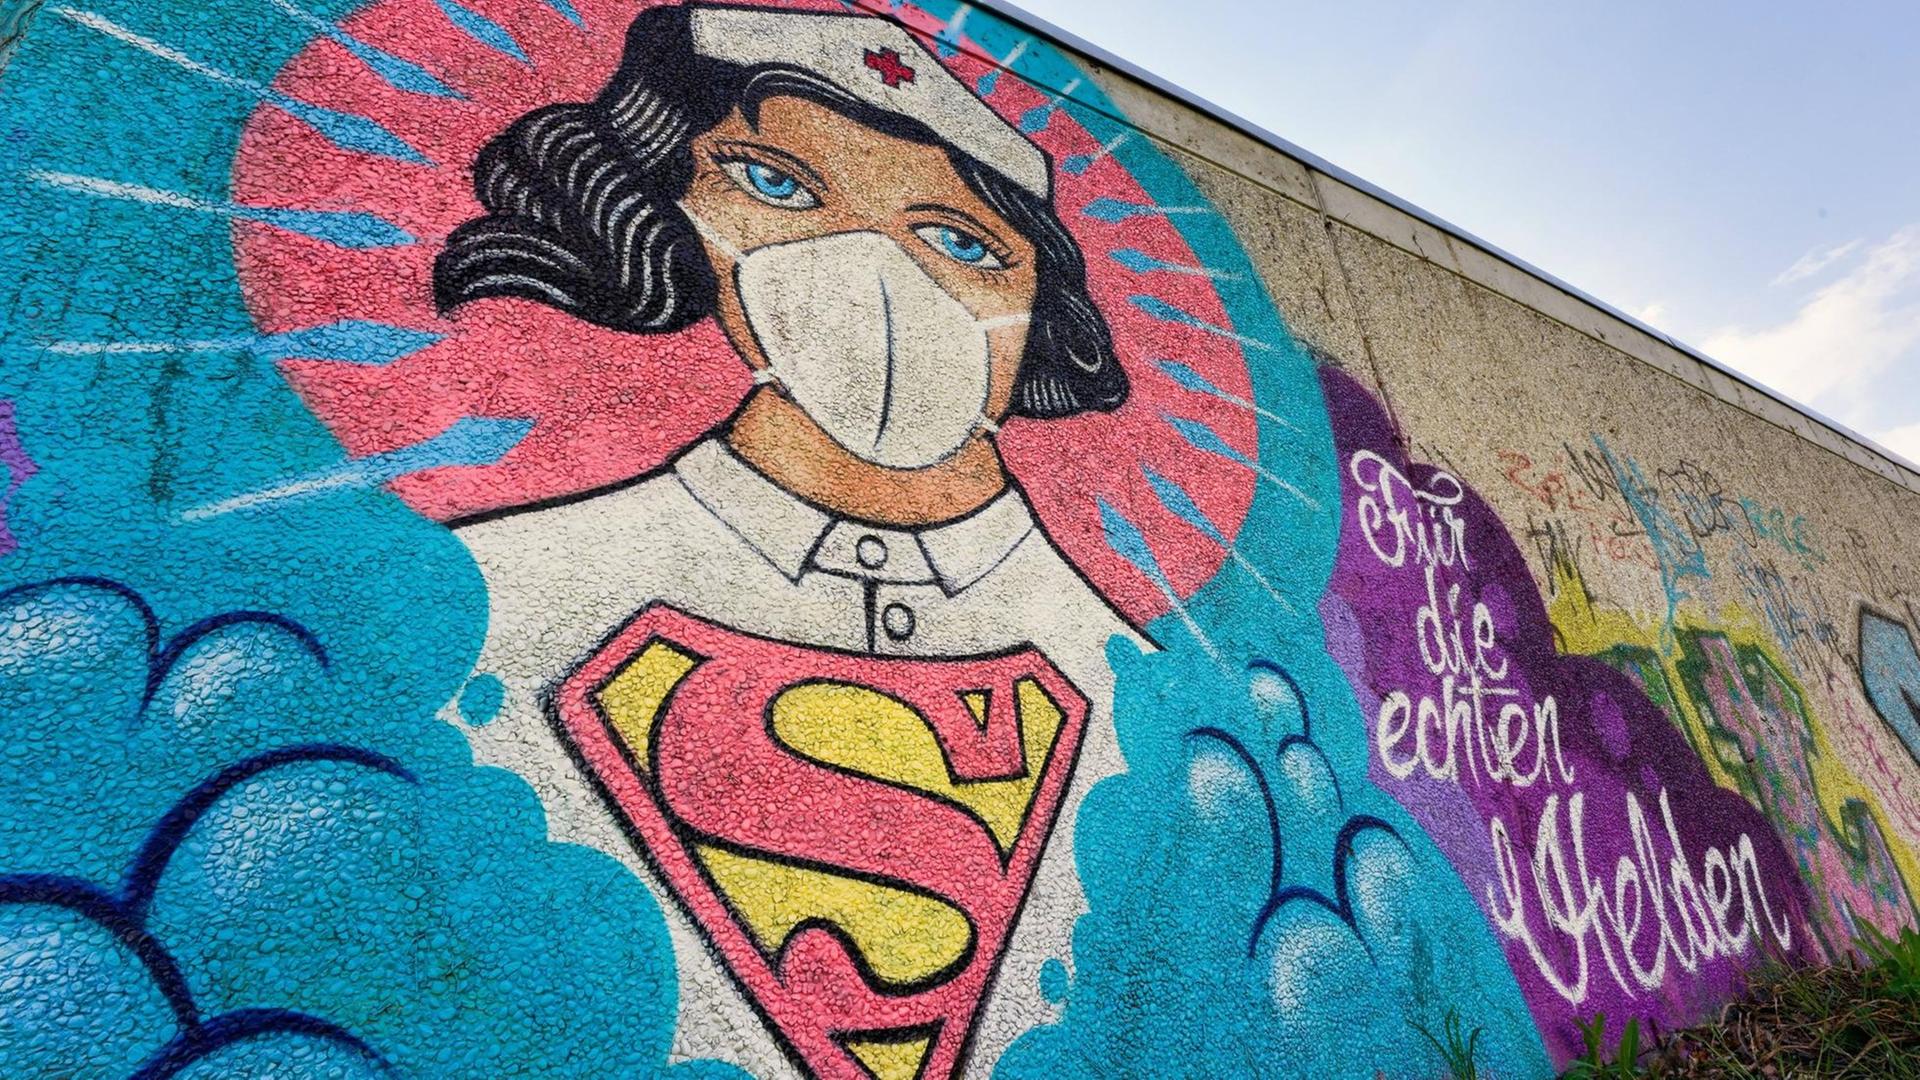 Das Graffiti Super-Nurse an einer Wand in Hamm.